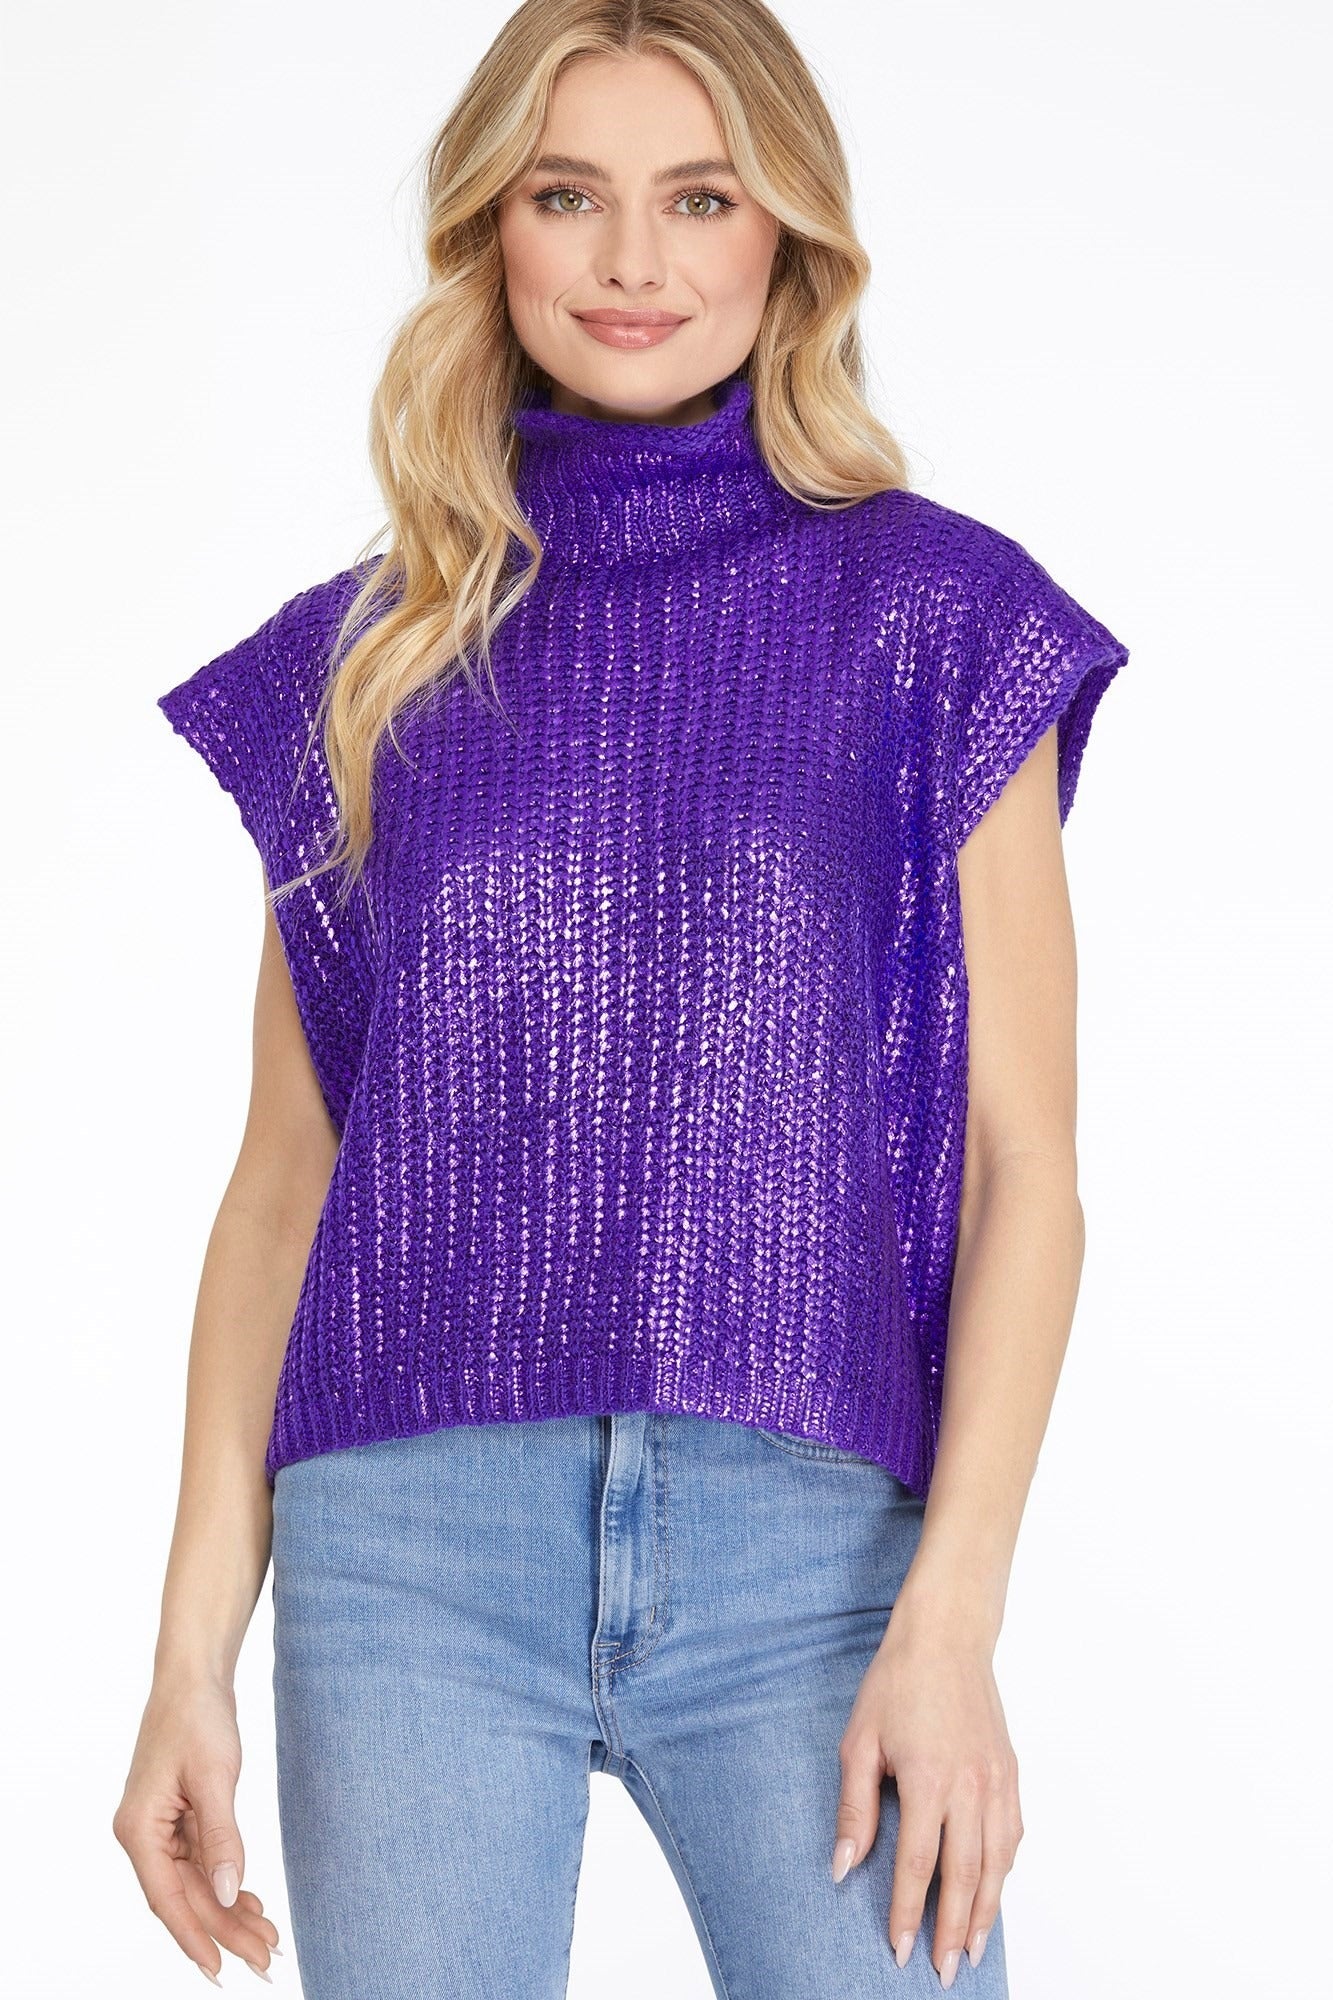 Metallic Sweater Top in Purple